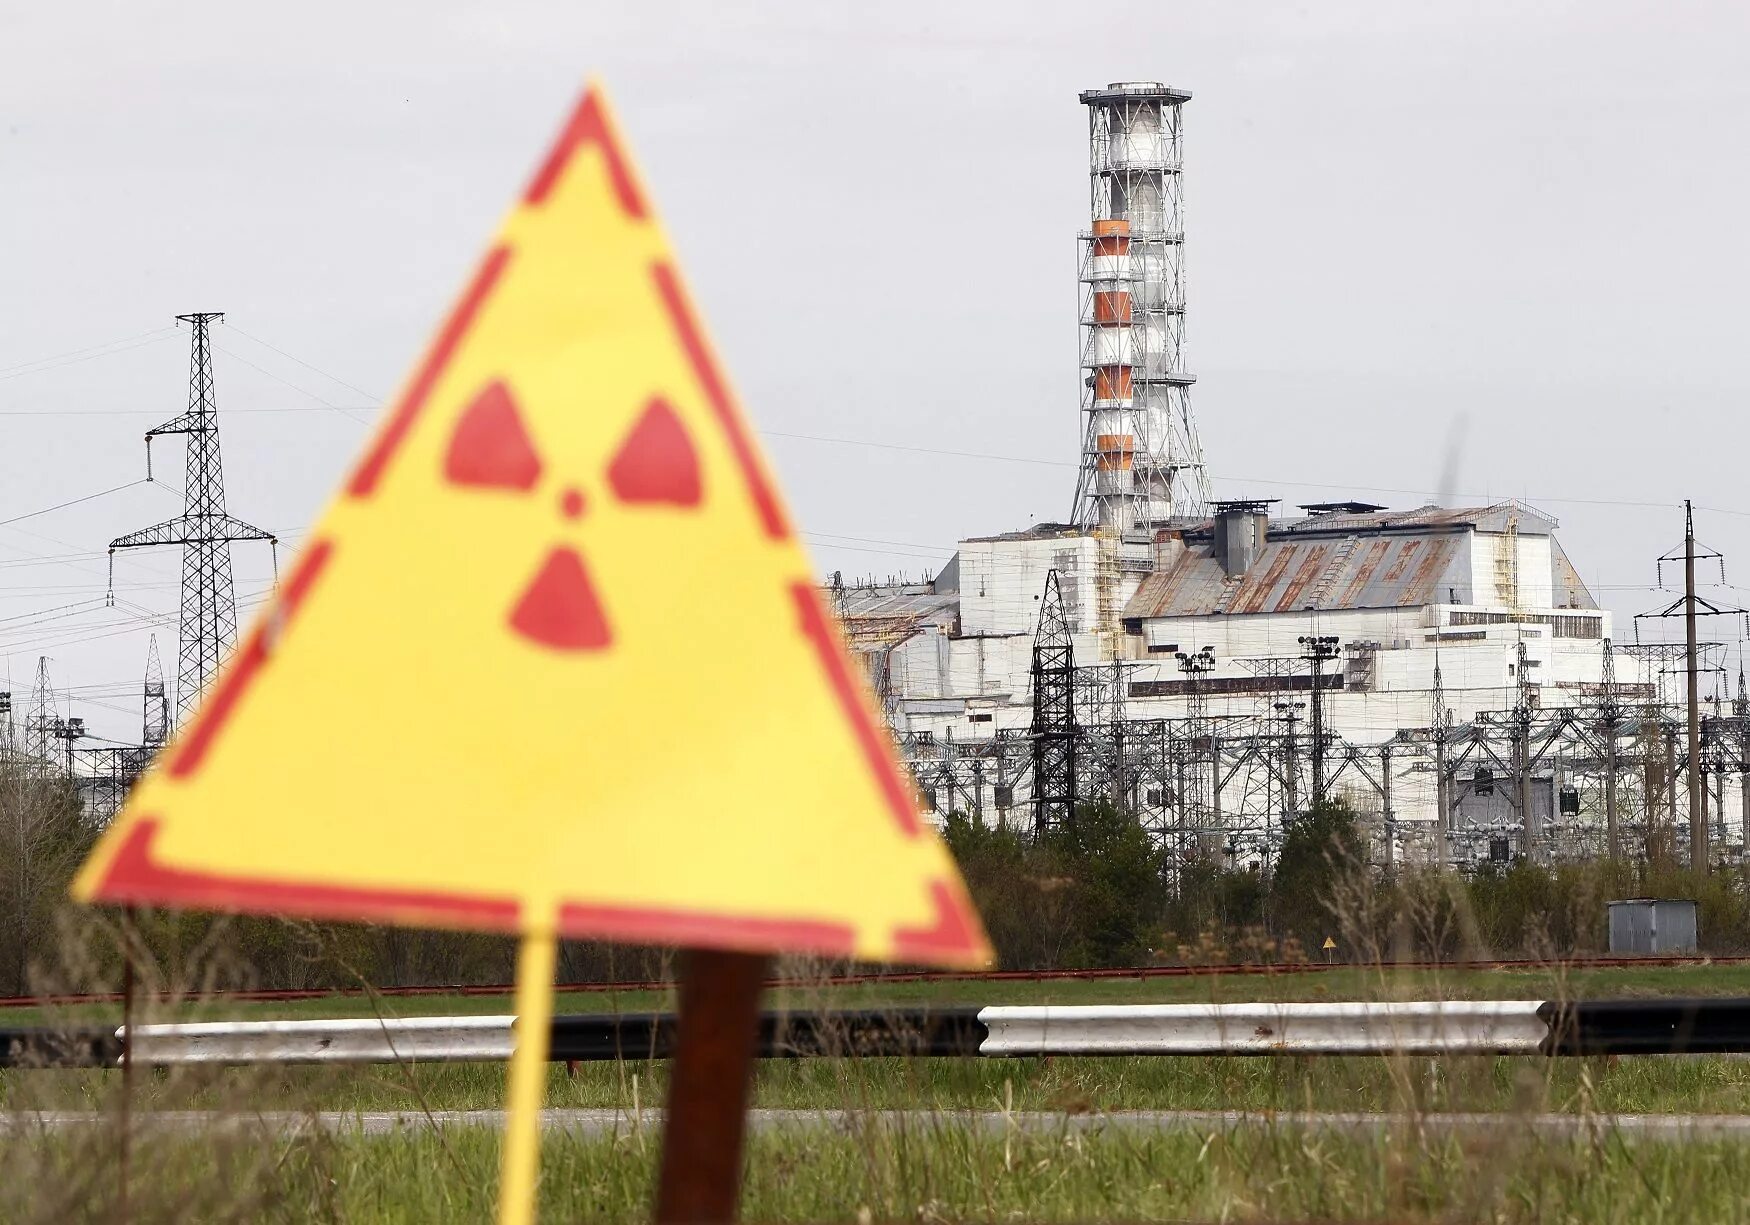 Chernobyl nuclear. Авария на ЧАЭС 1986 Чернобыль. ЧАЭС 1986 26 апреля. Чернобыль авария на АЭС взрыв. Чернобыльская АЭС АЭС авария.